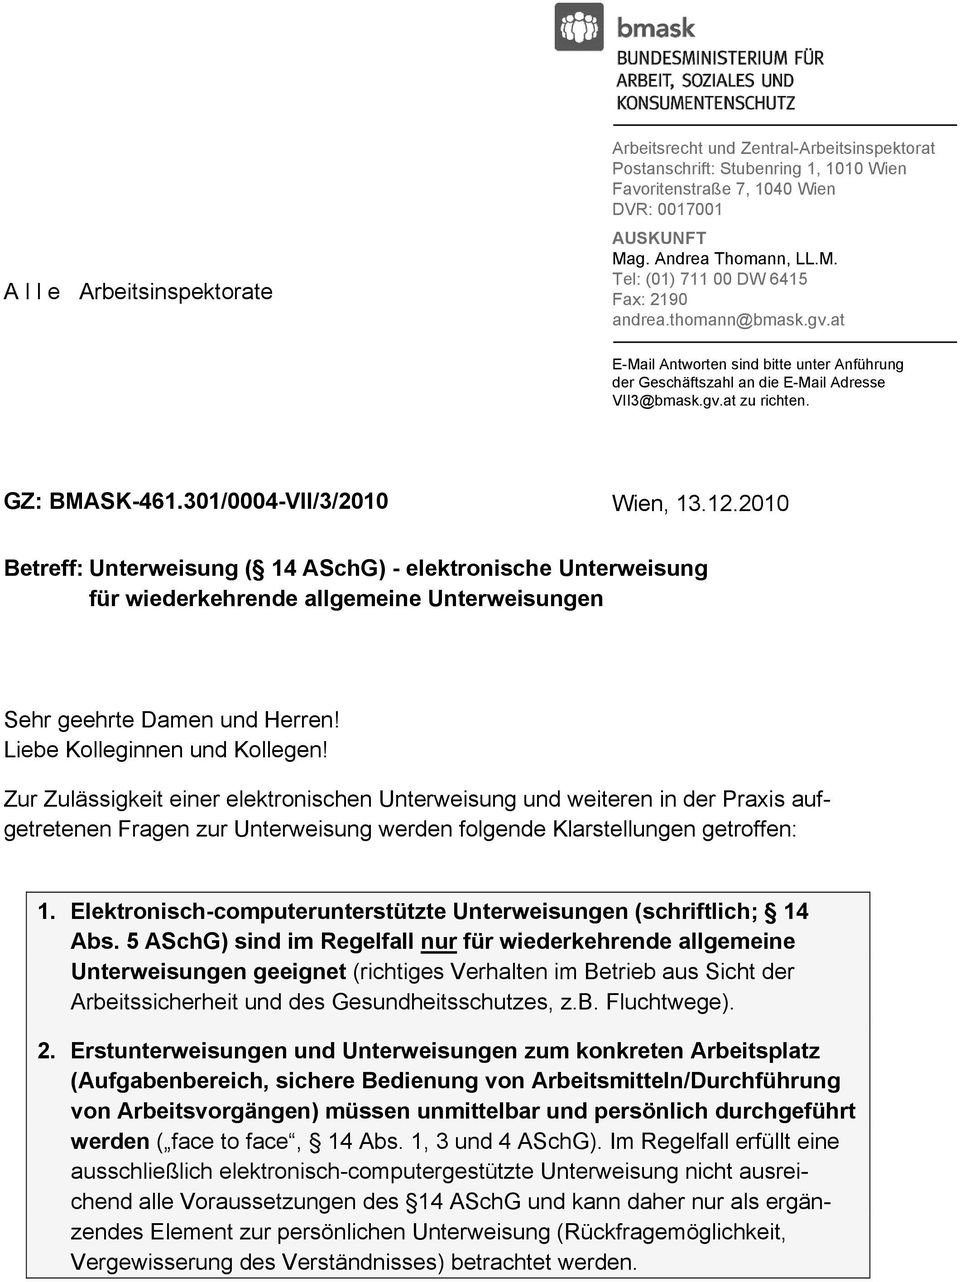 GZ: BMASK-461.301/0004-VII/3/2010 Wien, 13.12.2010 Betreff: Unterweisung ( 14 ASchG) - elektronische Unterweisung für wiederkehrende allgemeine Unterweisungen Sehr geehrte Damen und Herren!